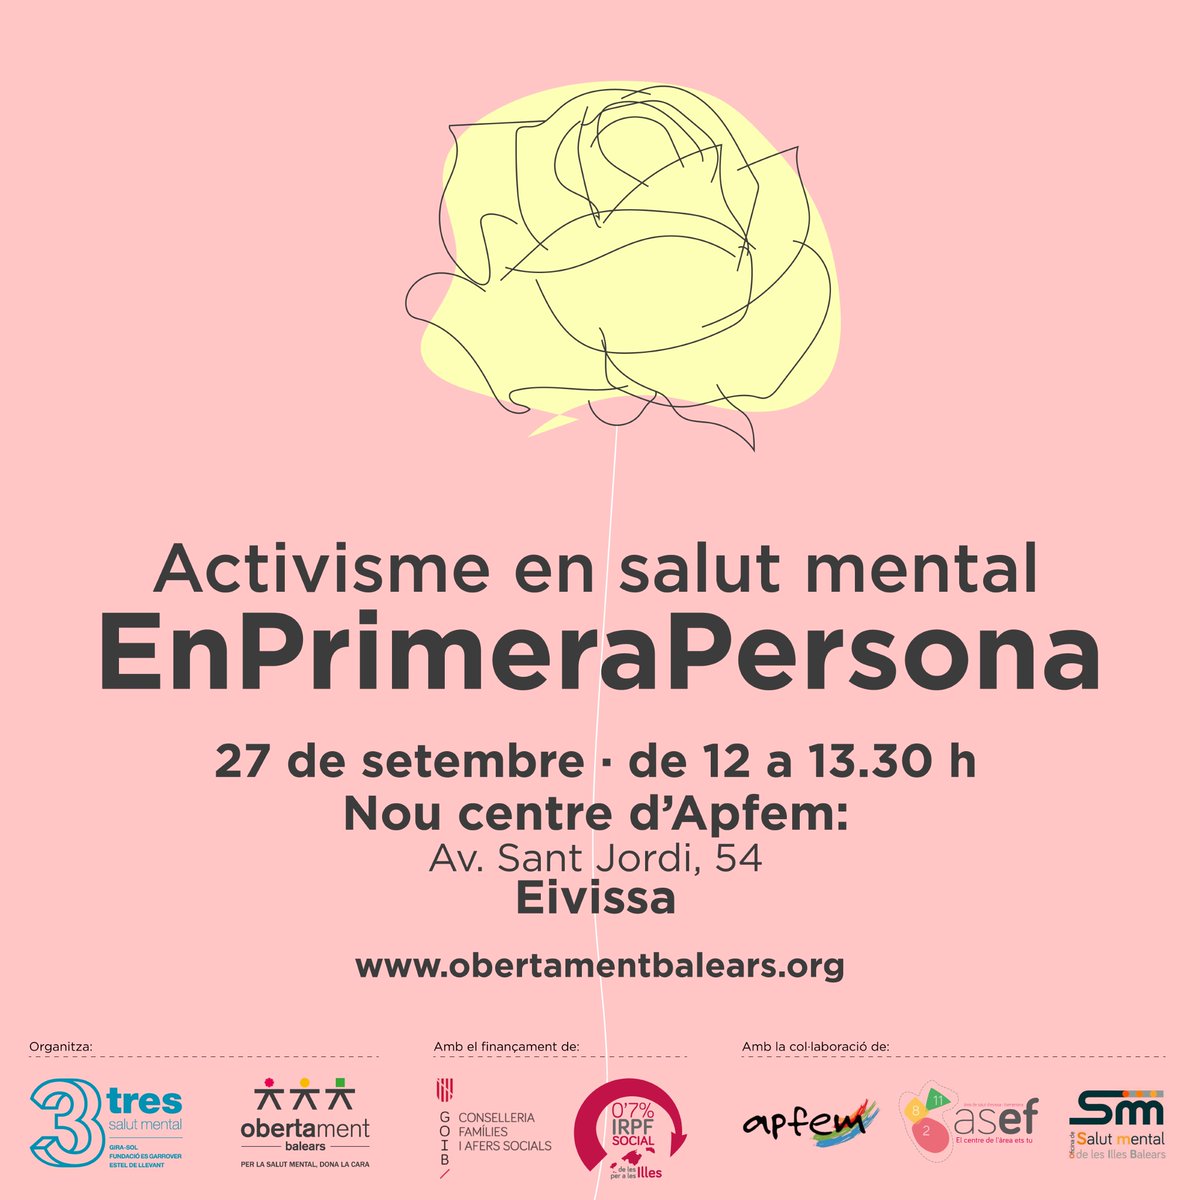 Vols conèixer millor en què consisteix l'activisme en salut mental en primera persona? 
El 27 de setembre t'esperam a la nova seu d'@APFEM a Eivissa!
#ObertamentBalears #IRPFSocial @GOIB_Social @OSMIB_IBSalut